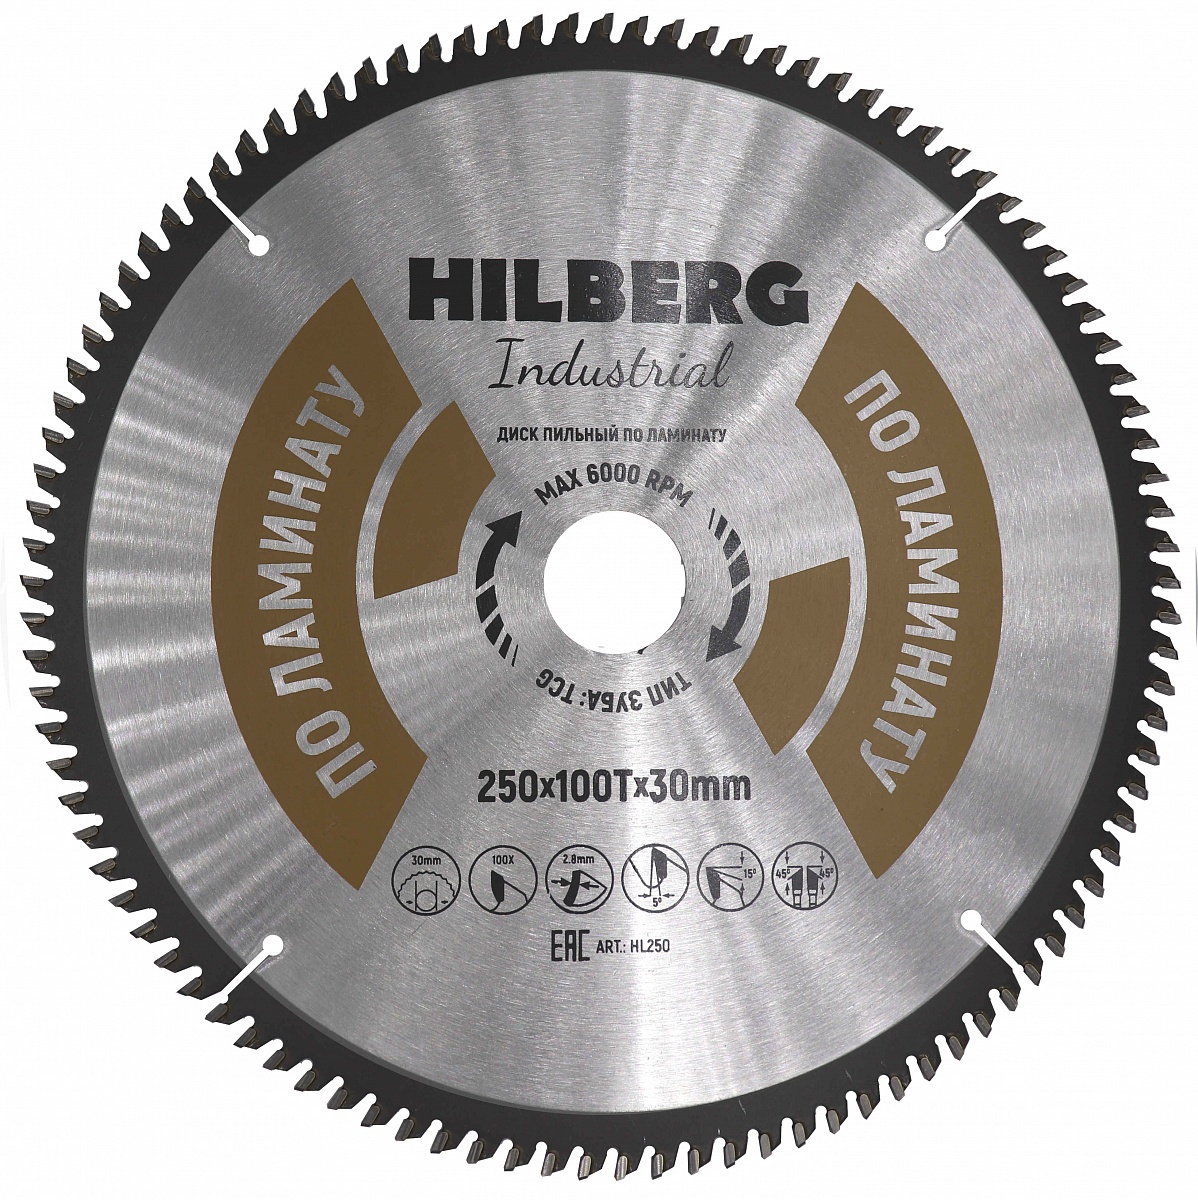 Диск пильный Hilberg ф250х30 z100 Industrial Ламинат